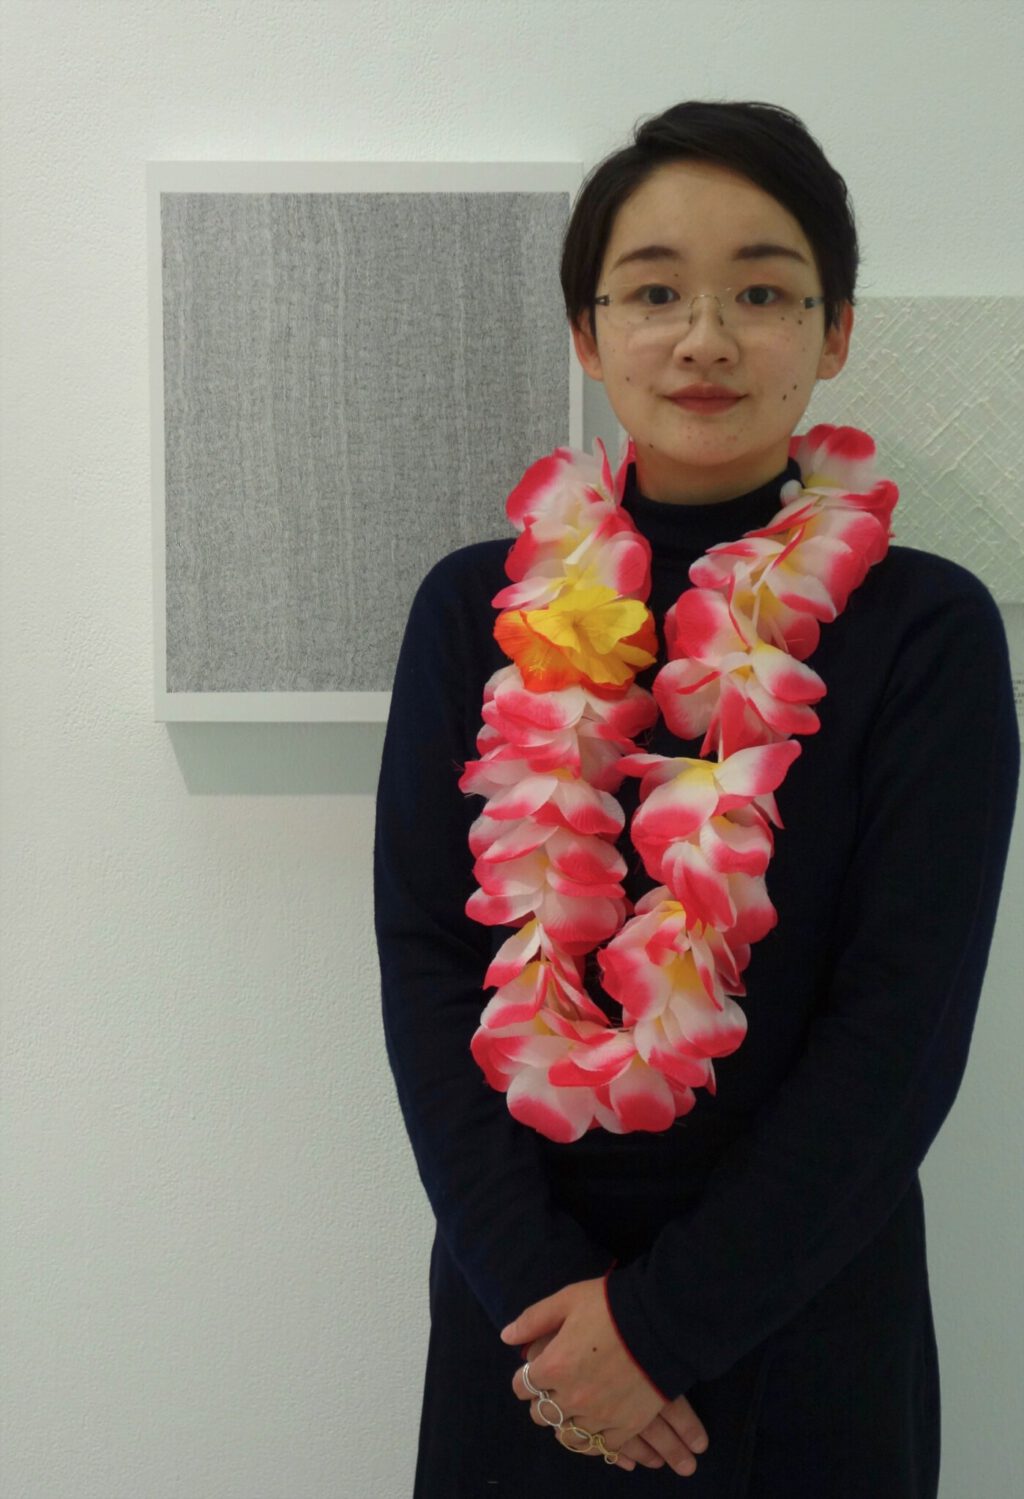 大和美緒 artist YAMATO Mio with her work BLACK LINE 34, Ink on canvas